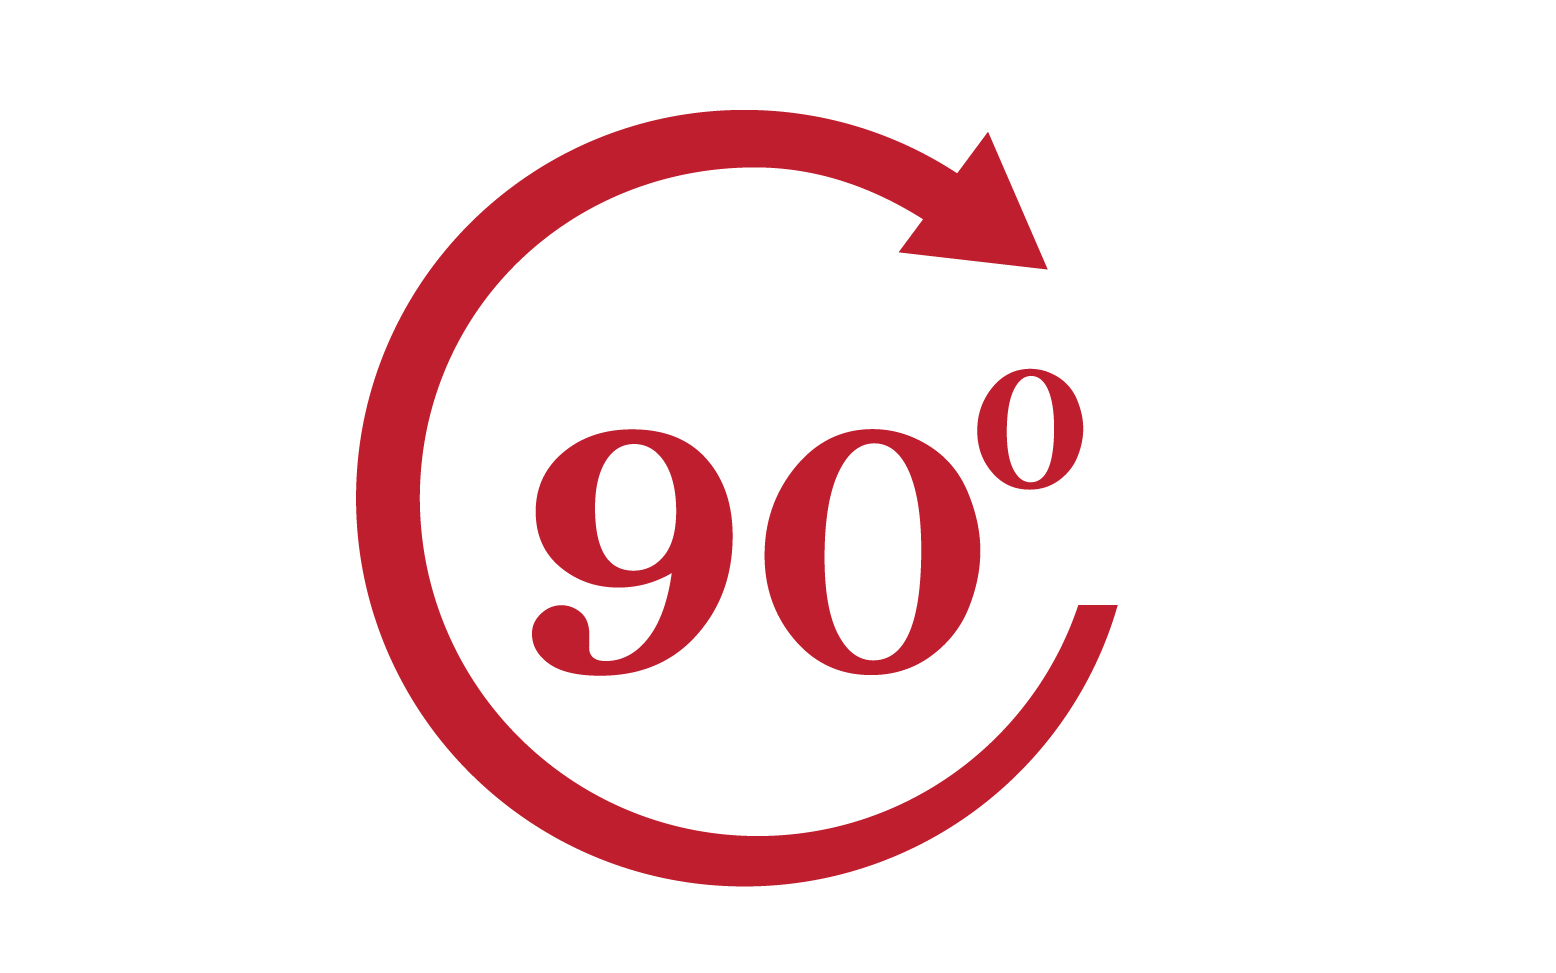 90 degree angle rotation icon symbol logo v4